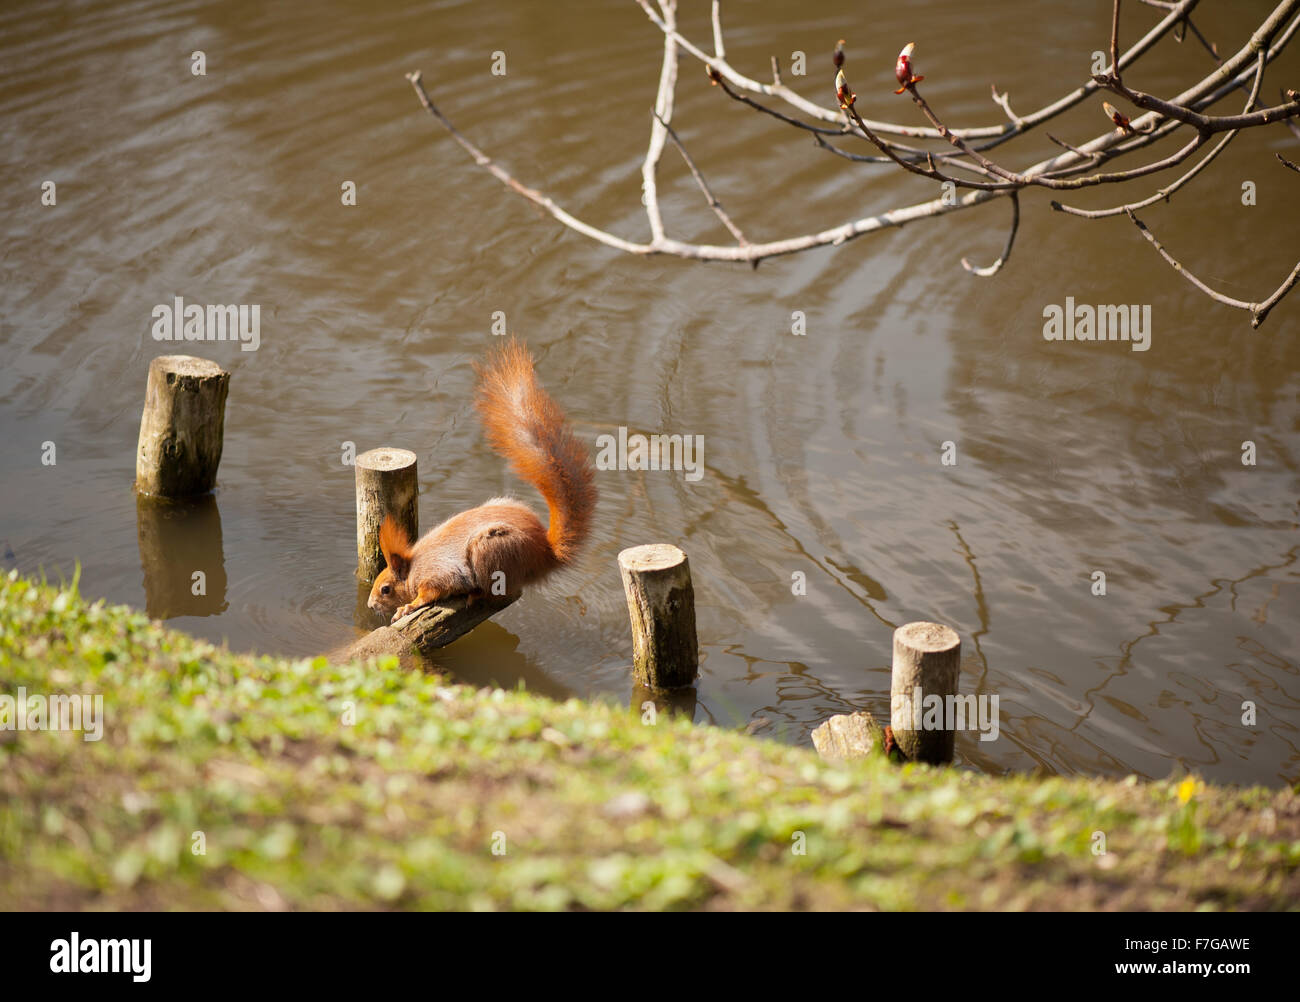 Ardilla sed beber agua del estanque en el parque, rojos adultos Sciurus animal sentado curva sobre postes de madera en el suelo... Foto de stock